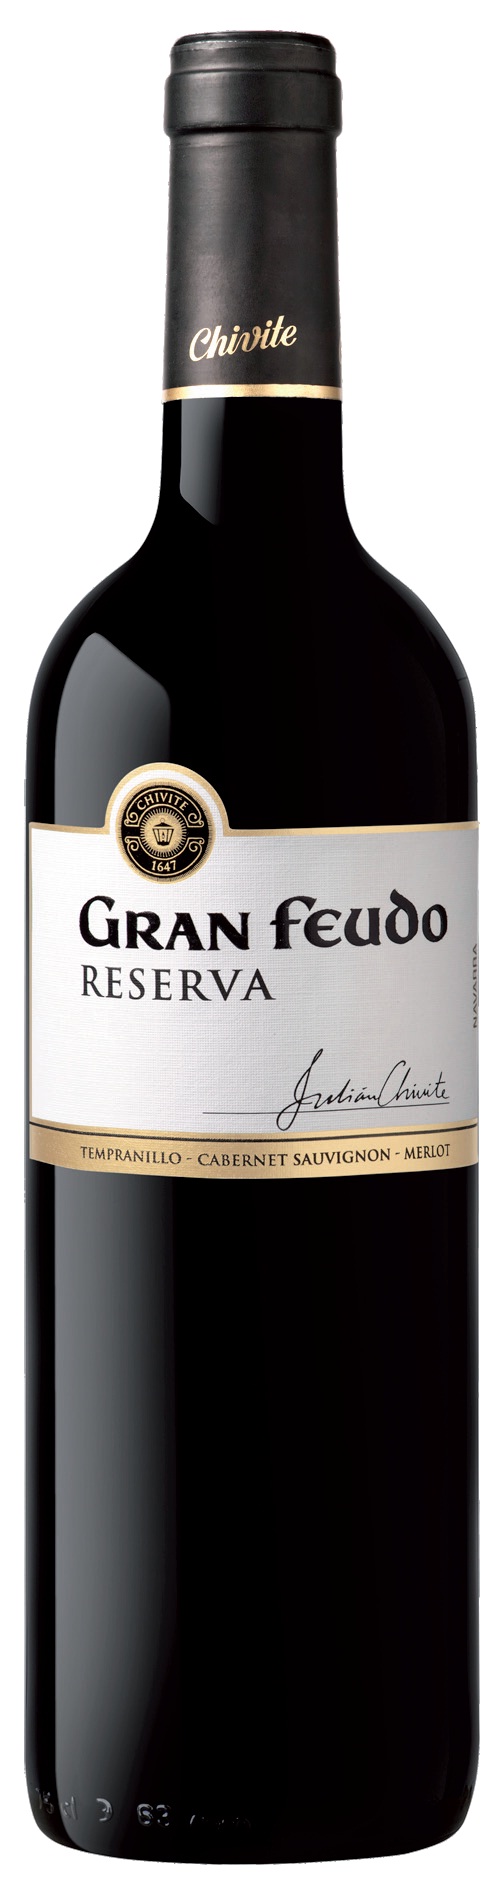 Bild von der Weinflasche Gran Feudo Viñas Viejas Reserva